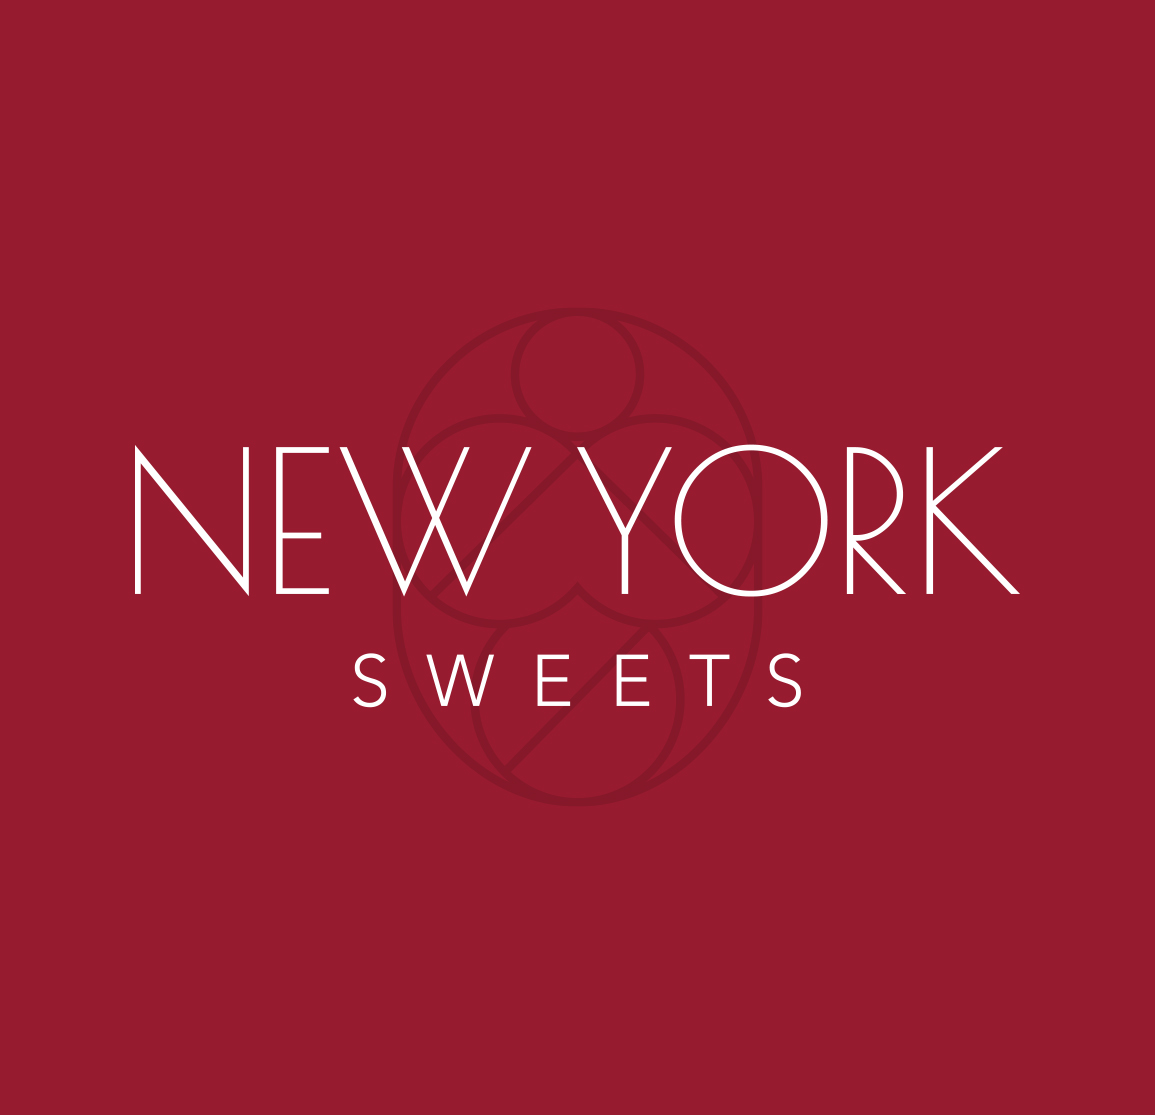 New York Sweets Ltd